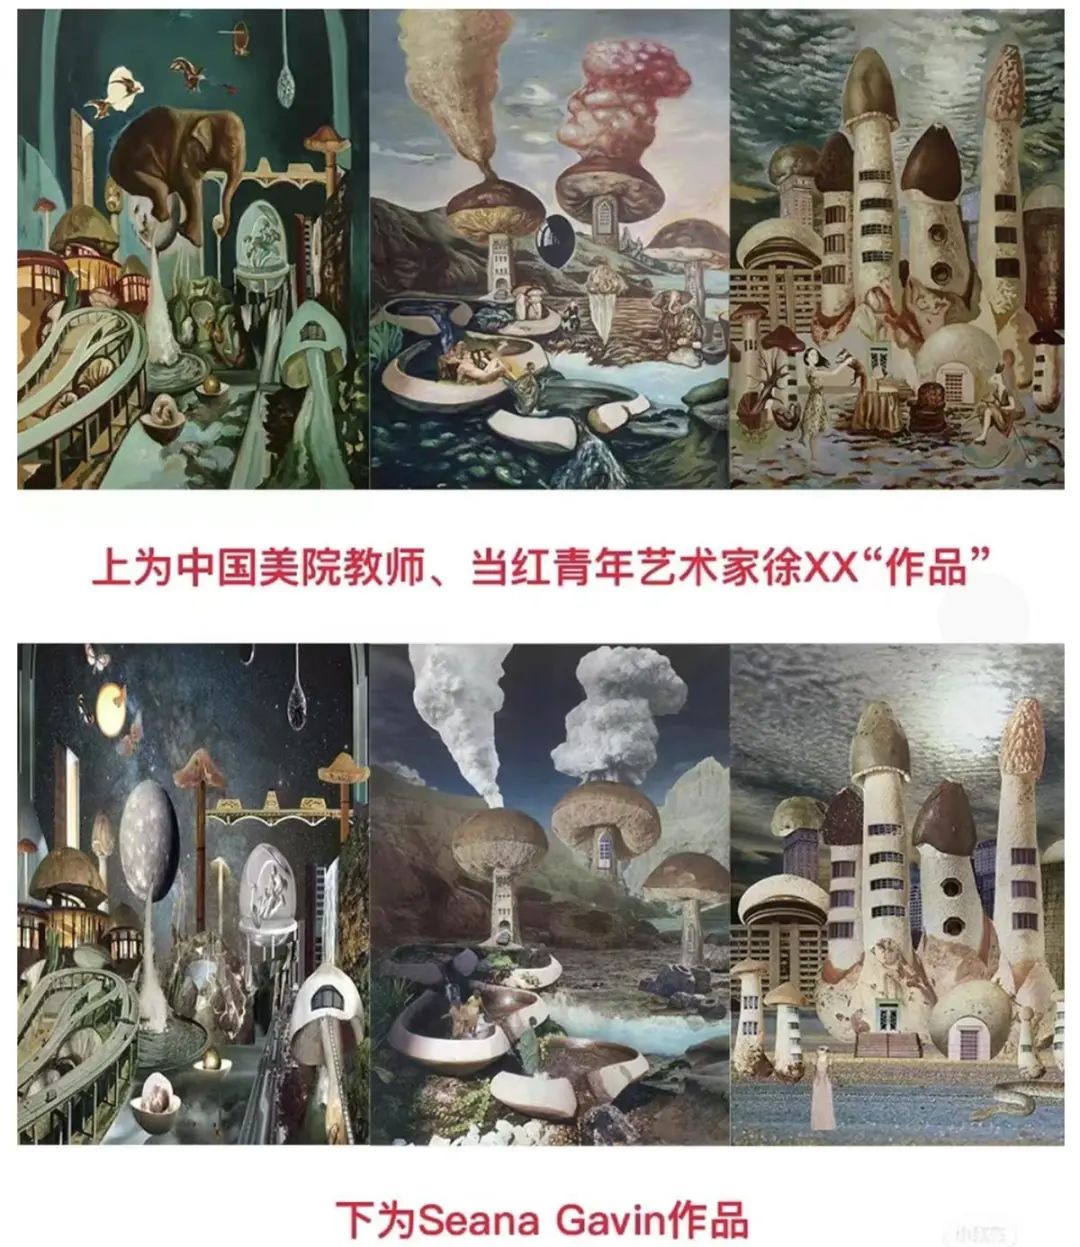 中国美术学院教师徐跋骋大量抄袭国外艺术家画作，被终止聘用